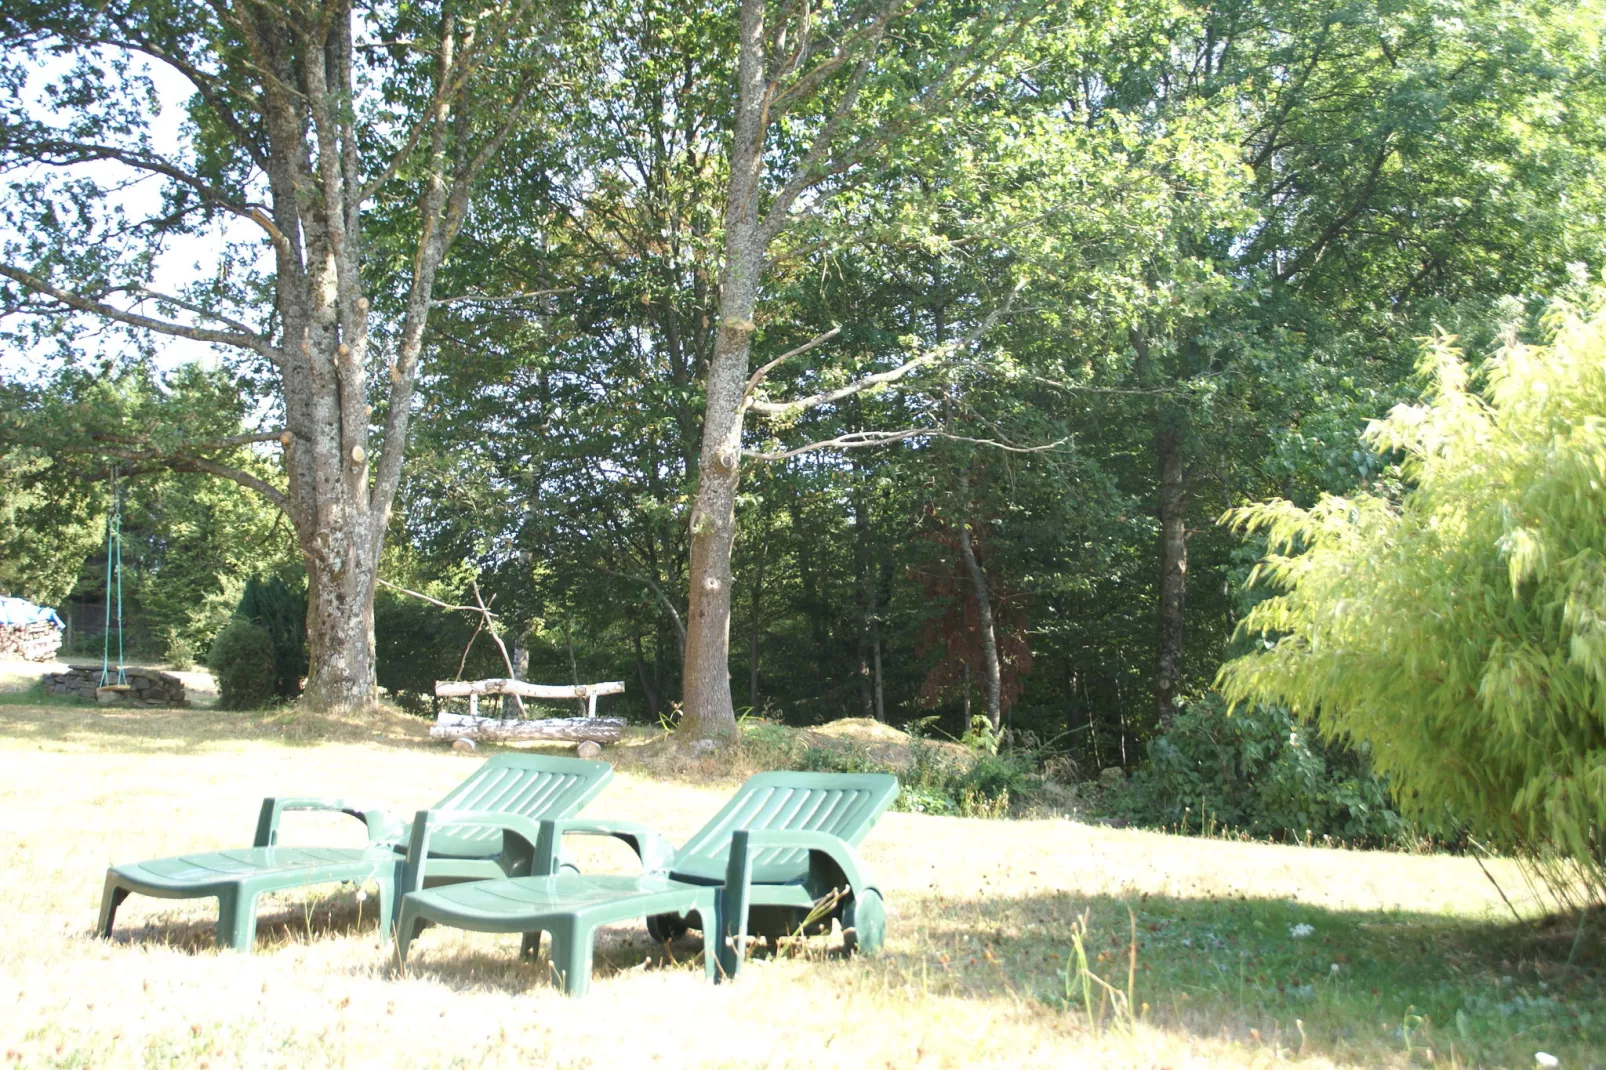 Chalet - HOMMERT-Tuinen zomer